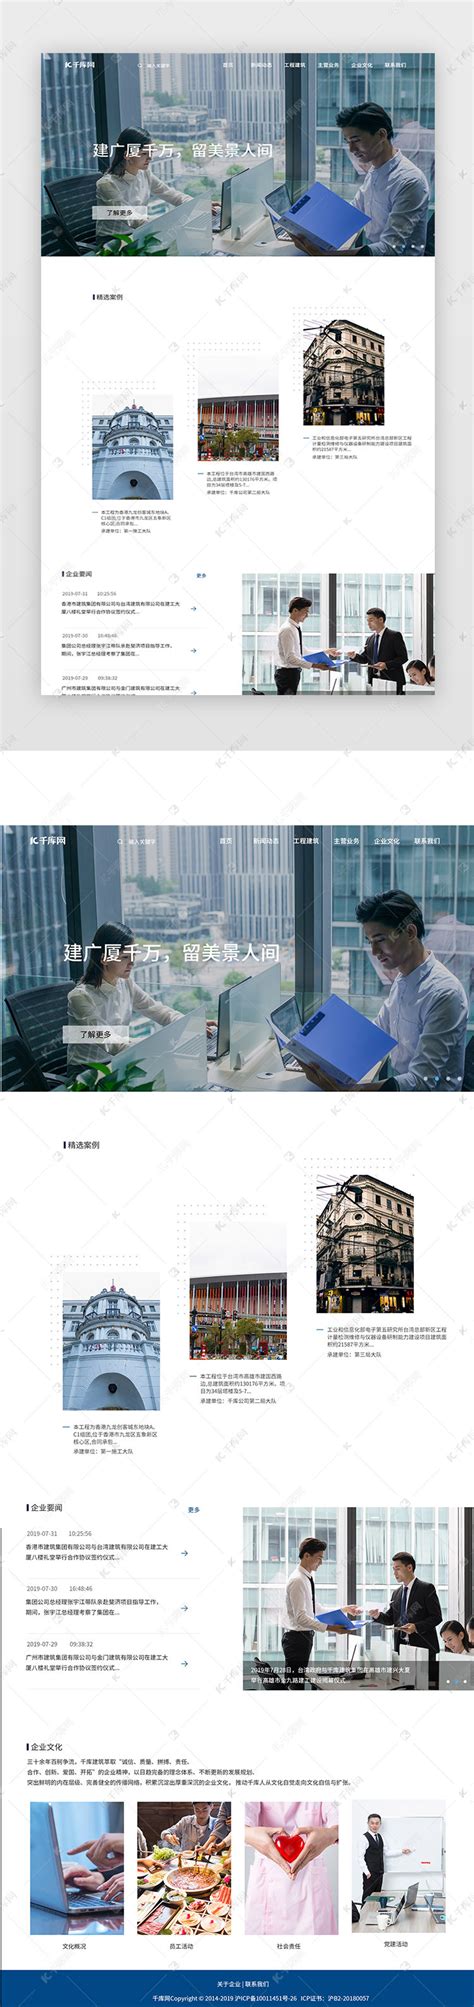 北京网站建设-制作技术好案例多-高端网站设计公司【企术网建】